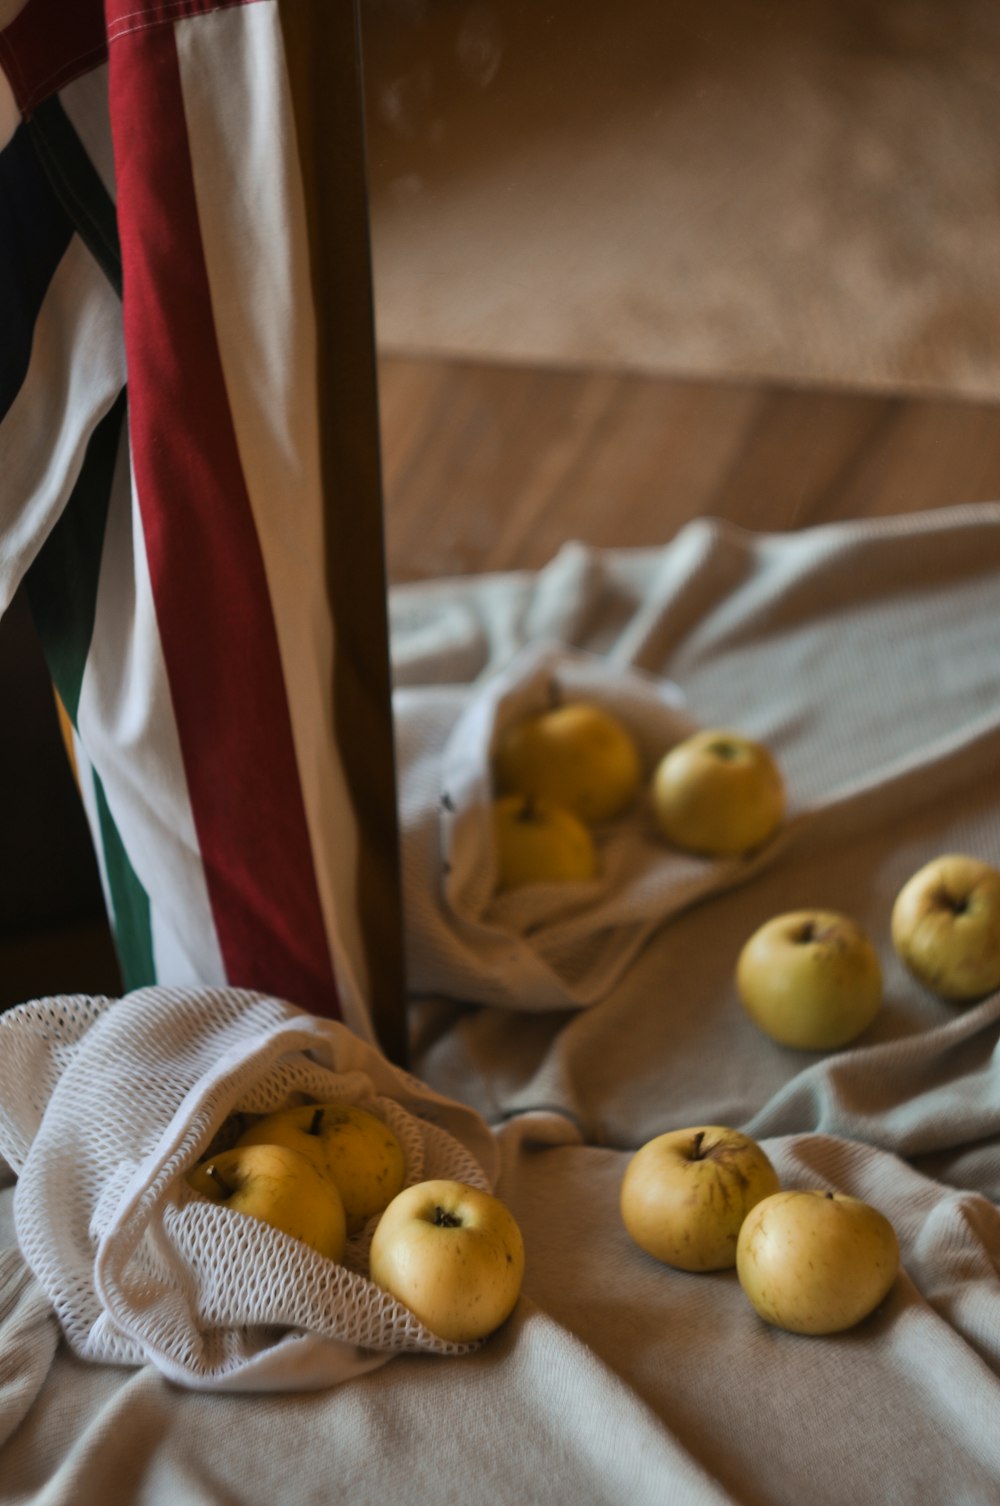 round yellow fruits on textile